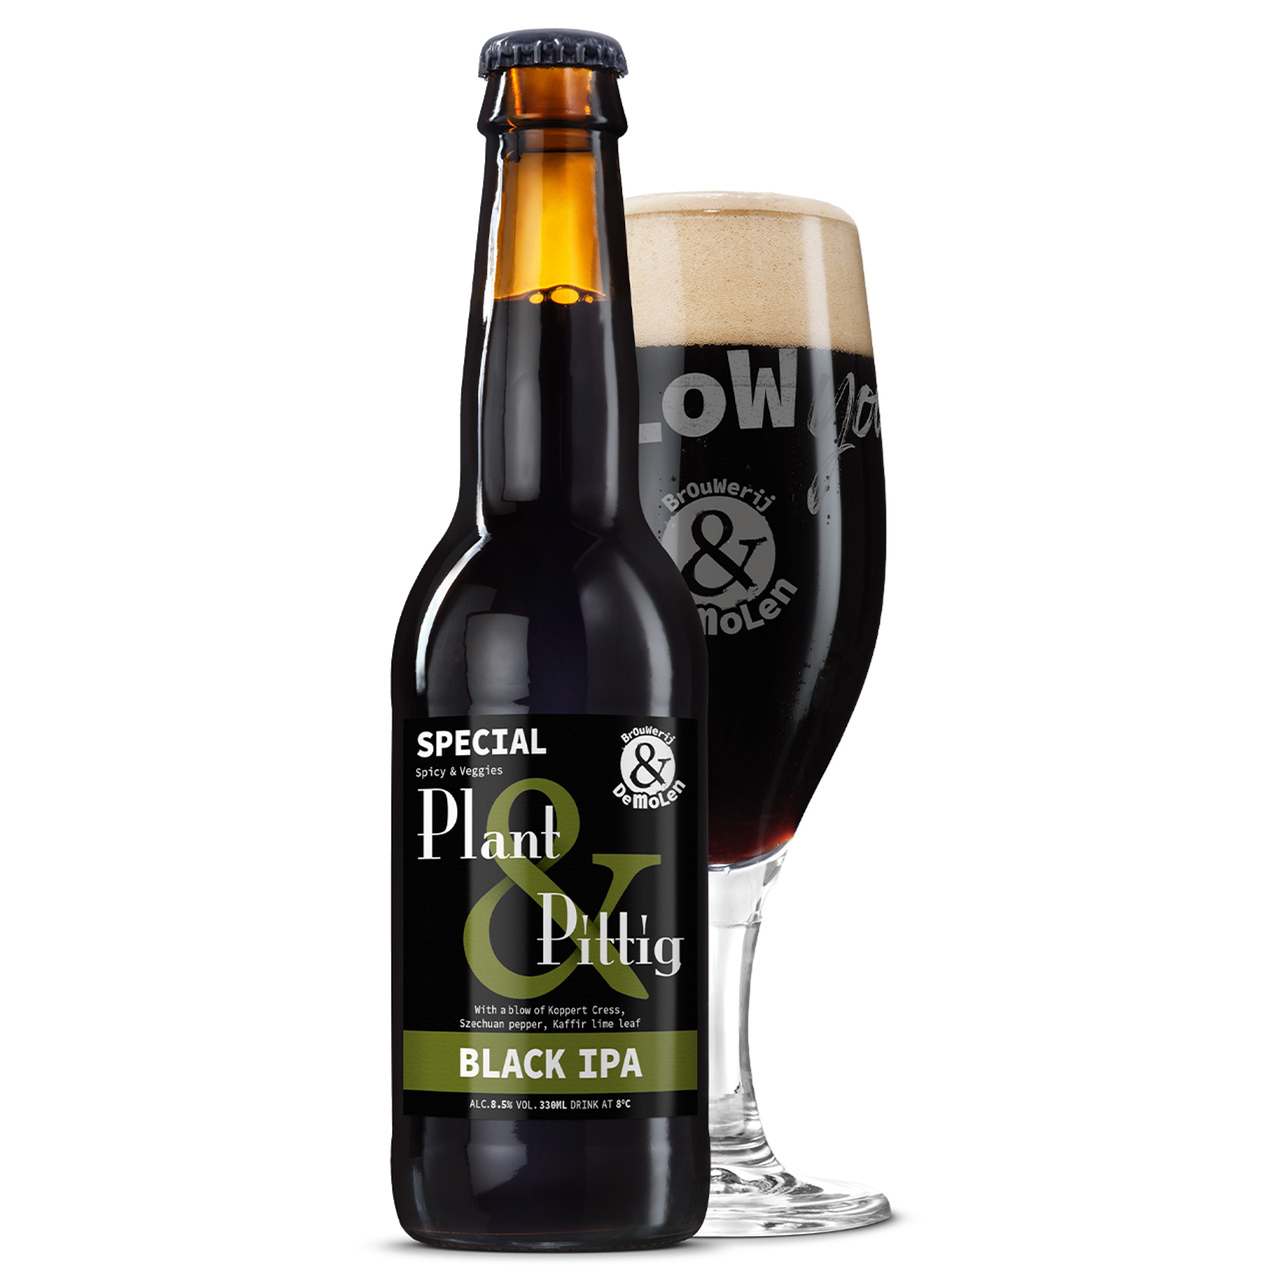 De Molen Plant & Piyyih. Is het black IPA bier van de Molen met 8.5% alcohol.